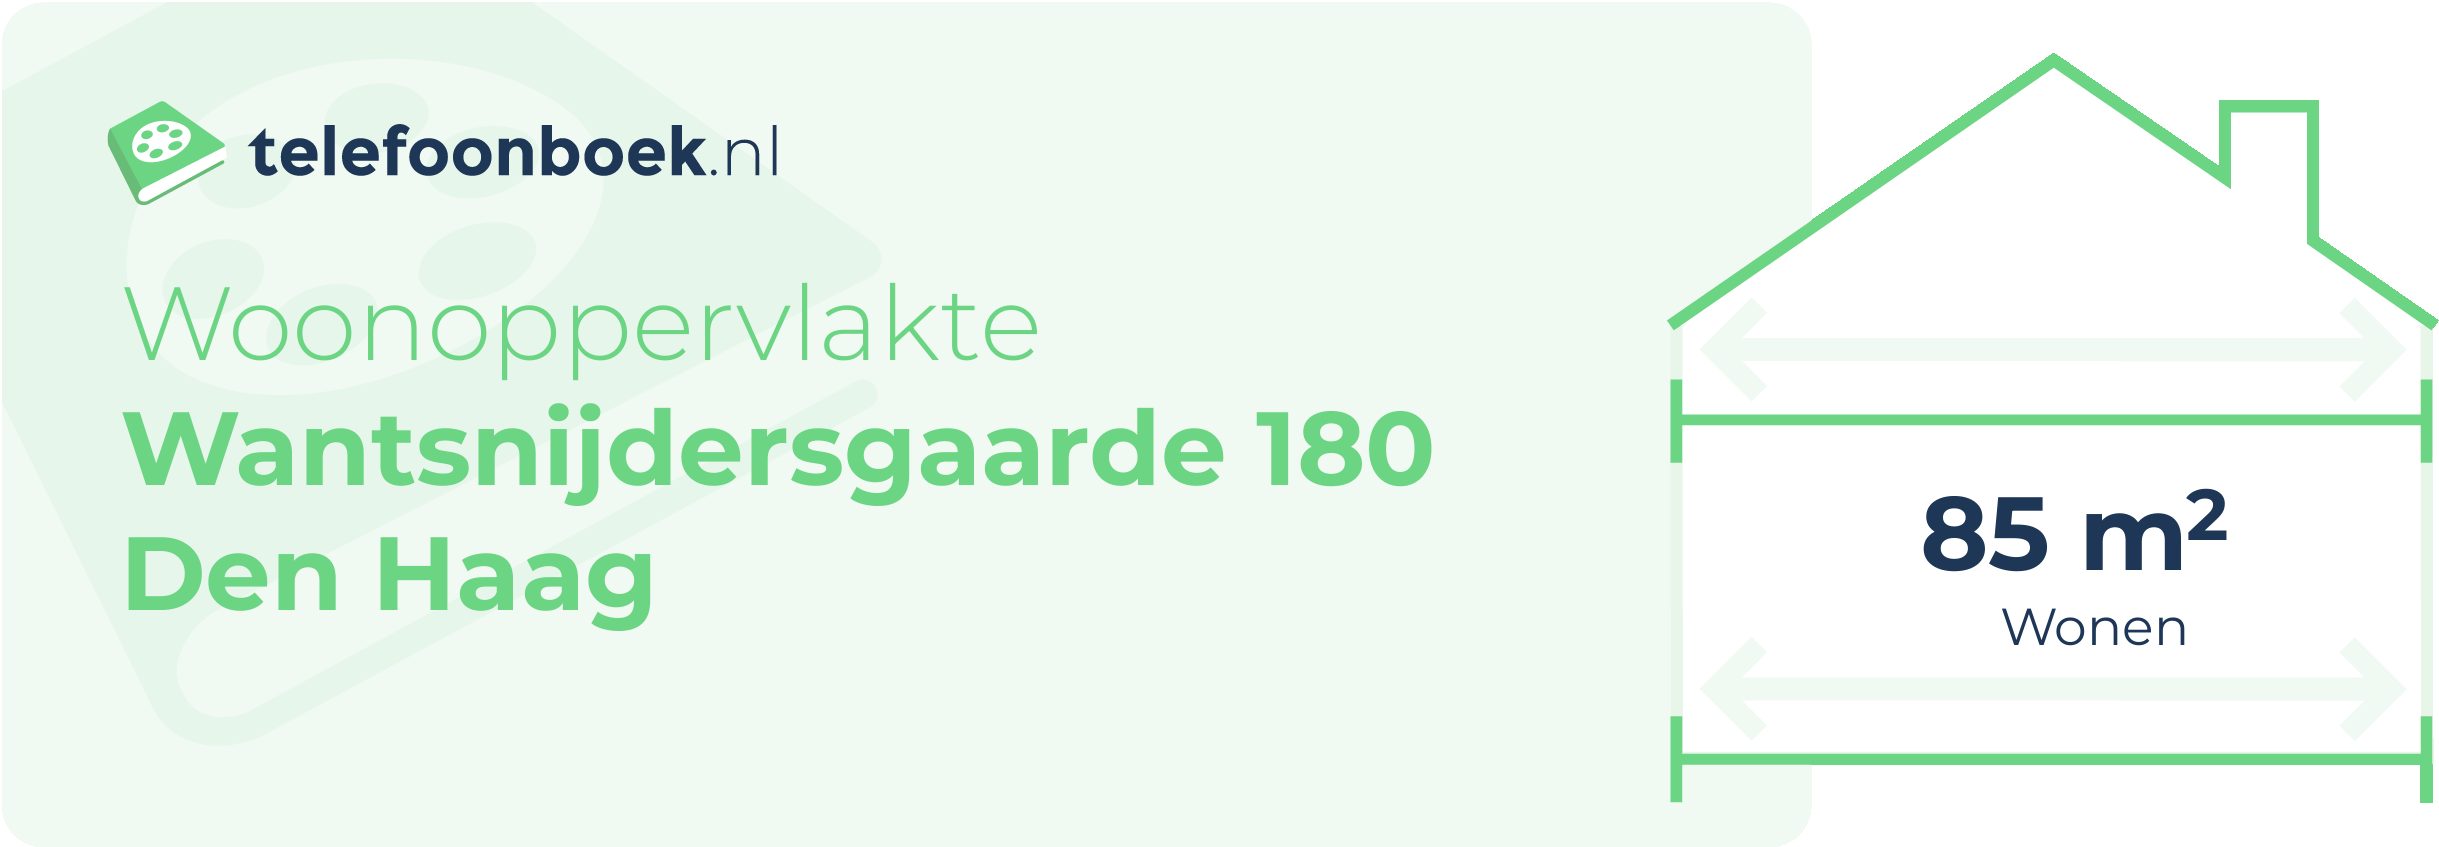 Woonoppervlakte Wantsnijdersgaarde 180 Den Haag